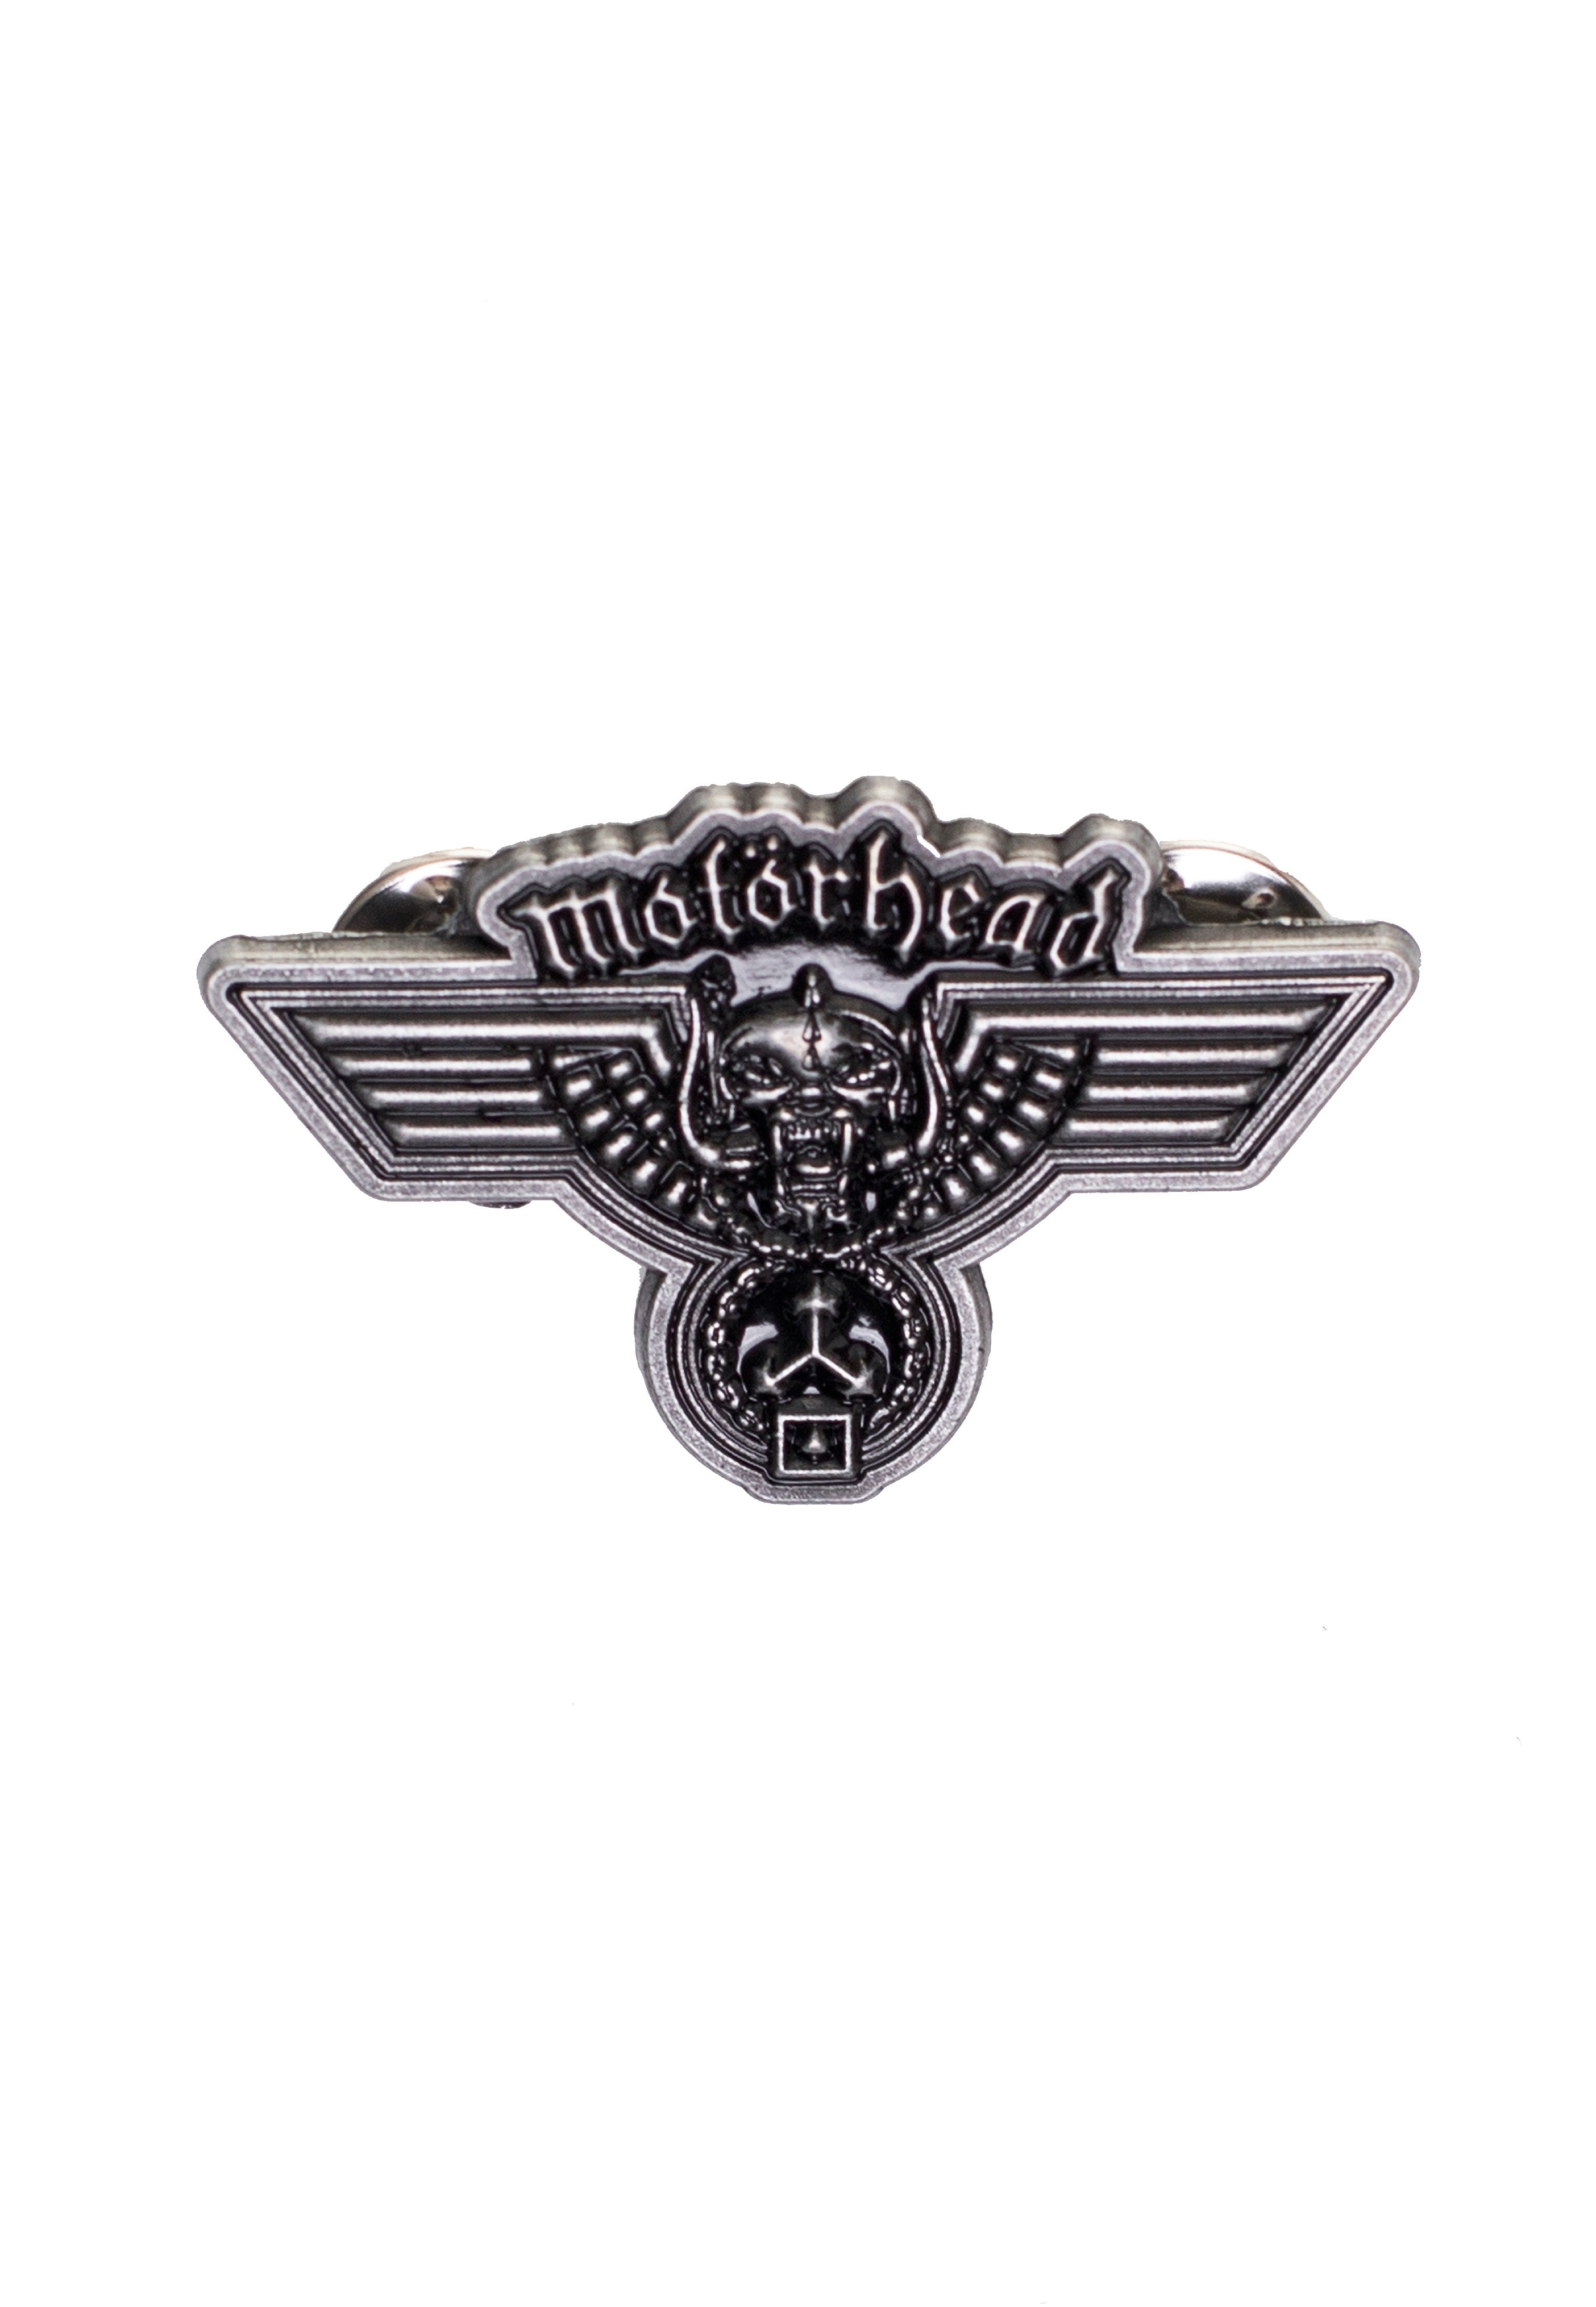 Motörhead - Hammered - Pin